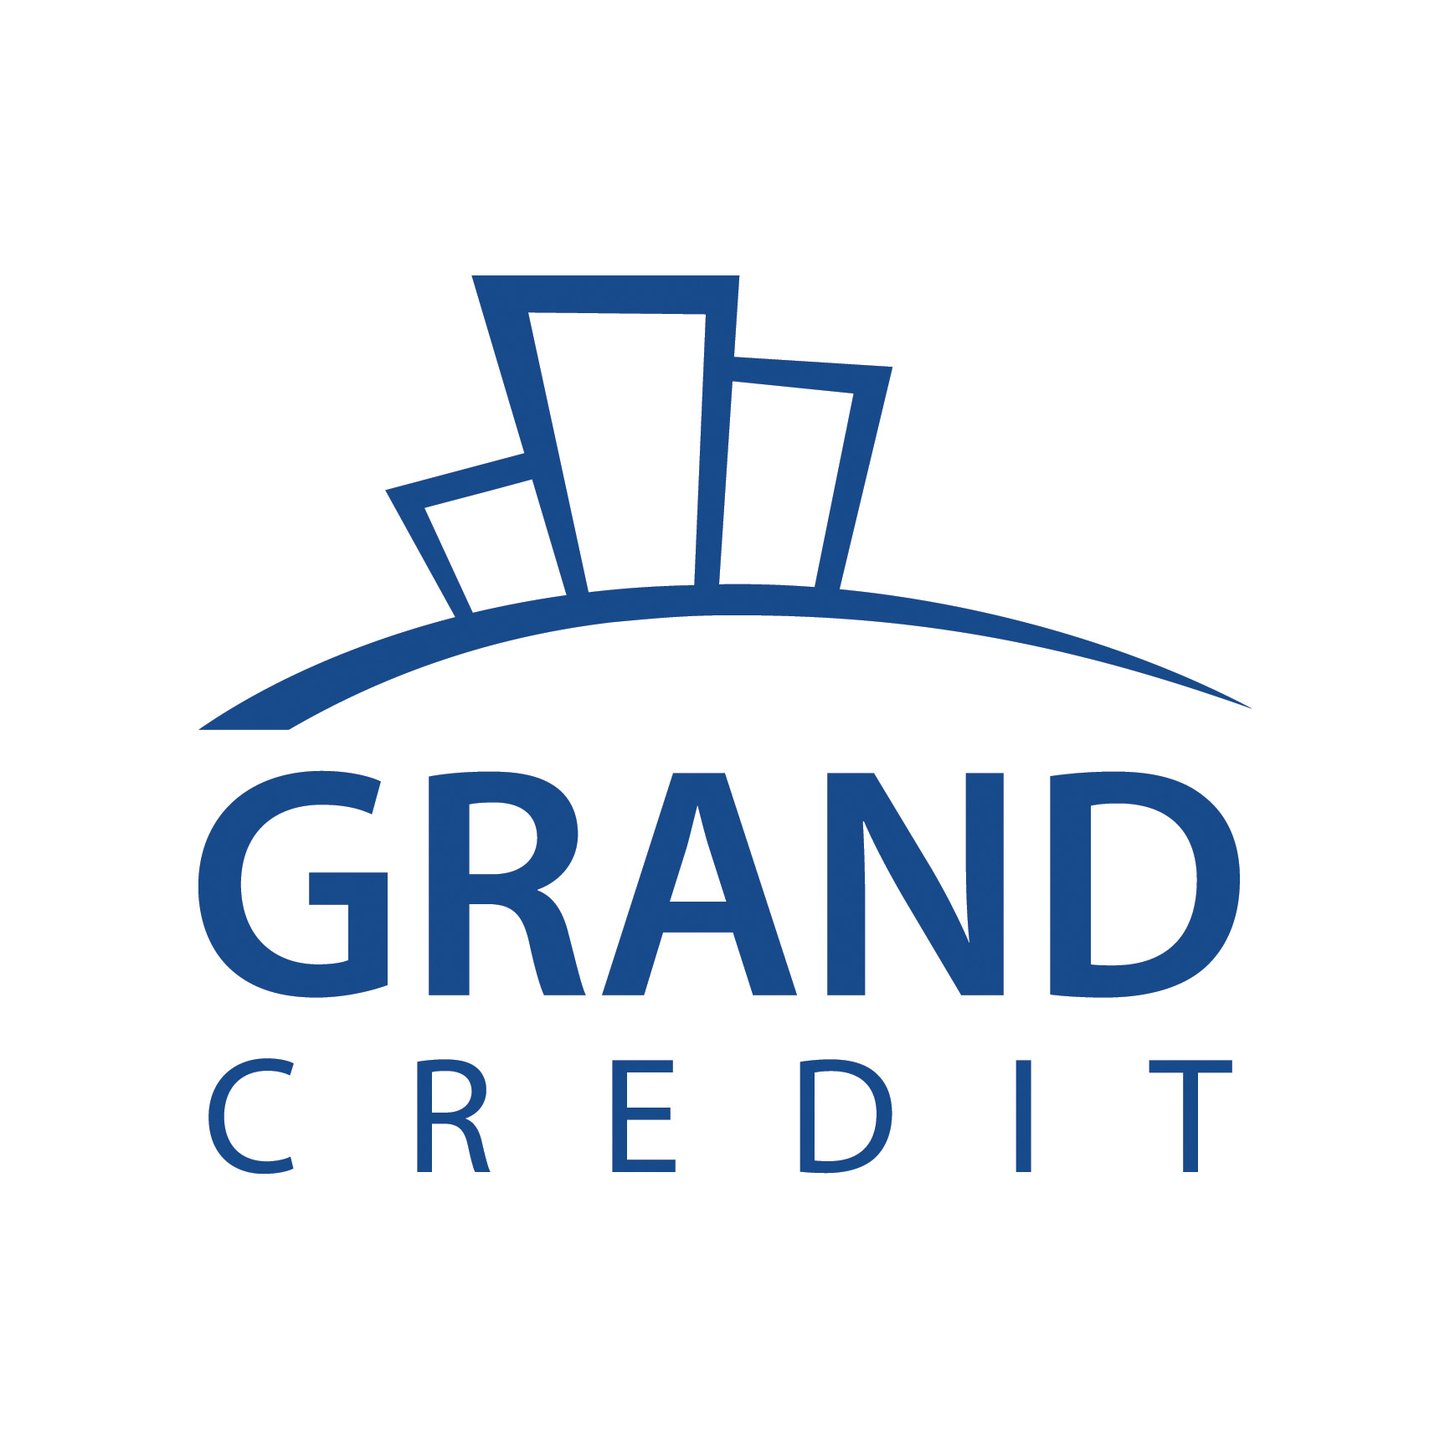 Grand Credit поможет, если девелоперу потребуется финансирование